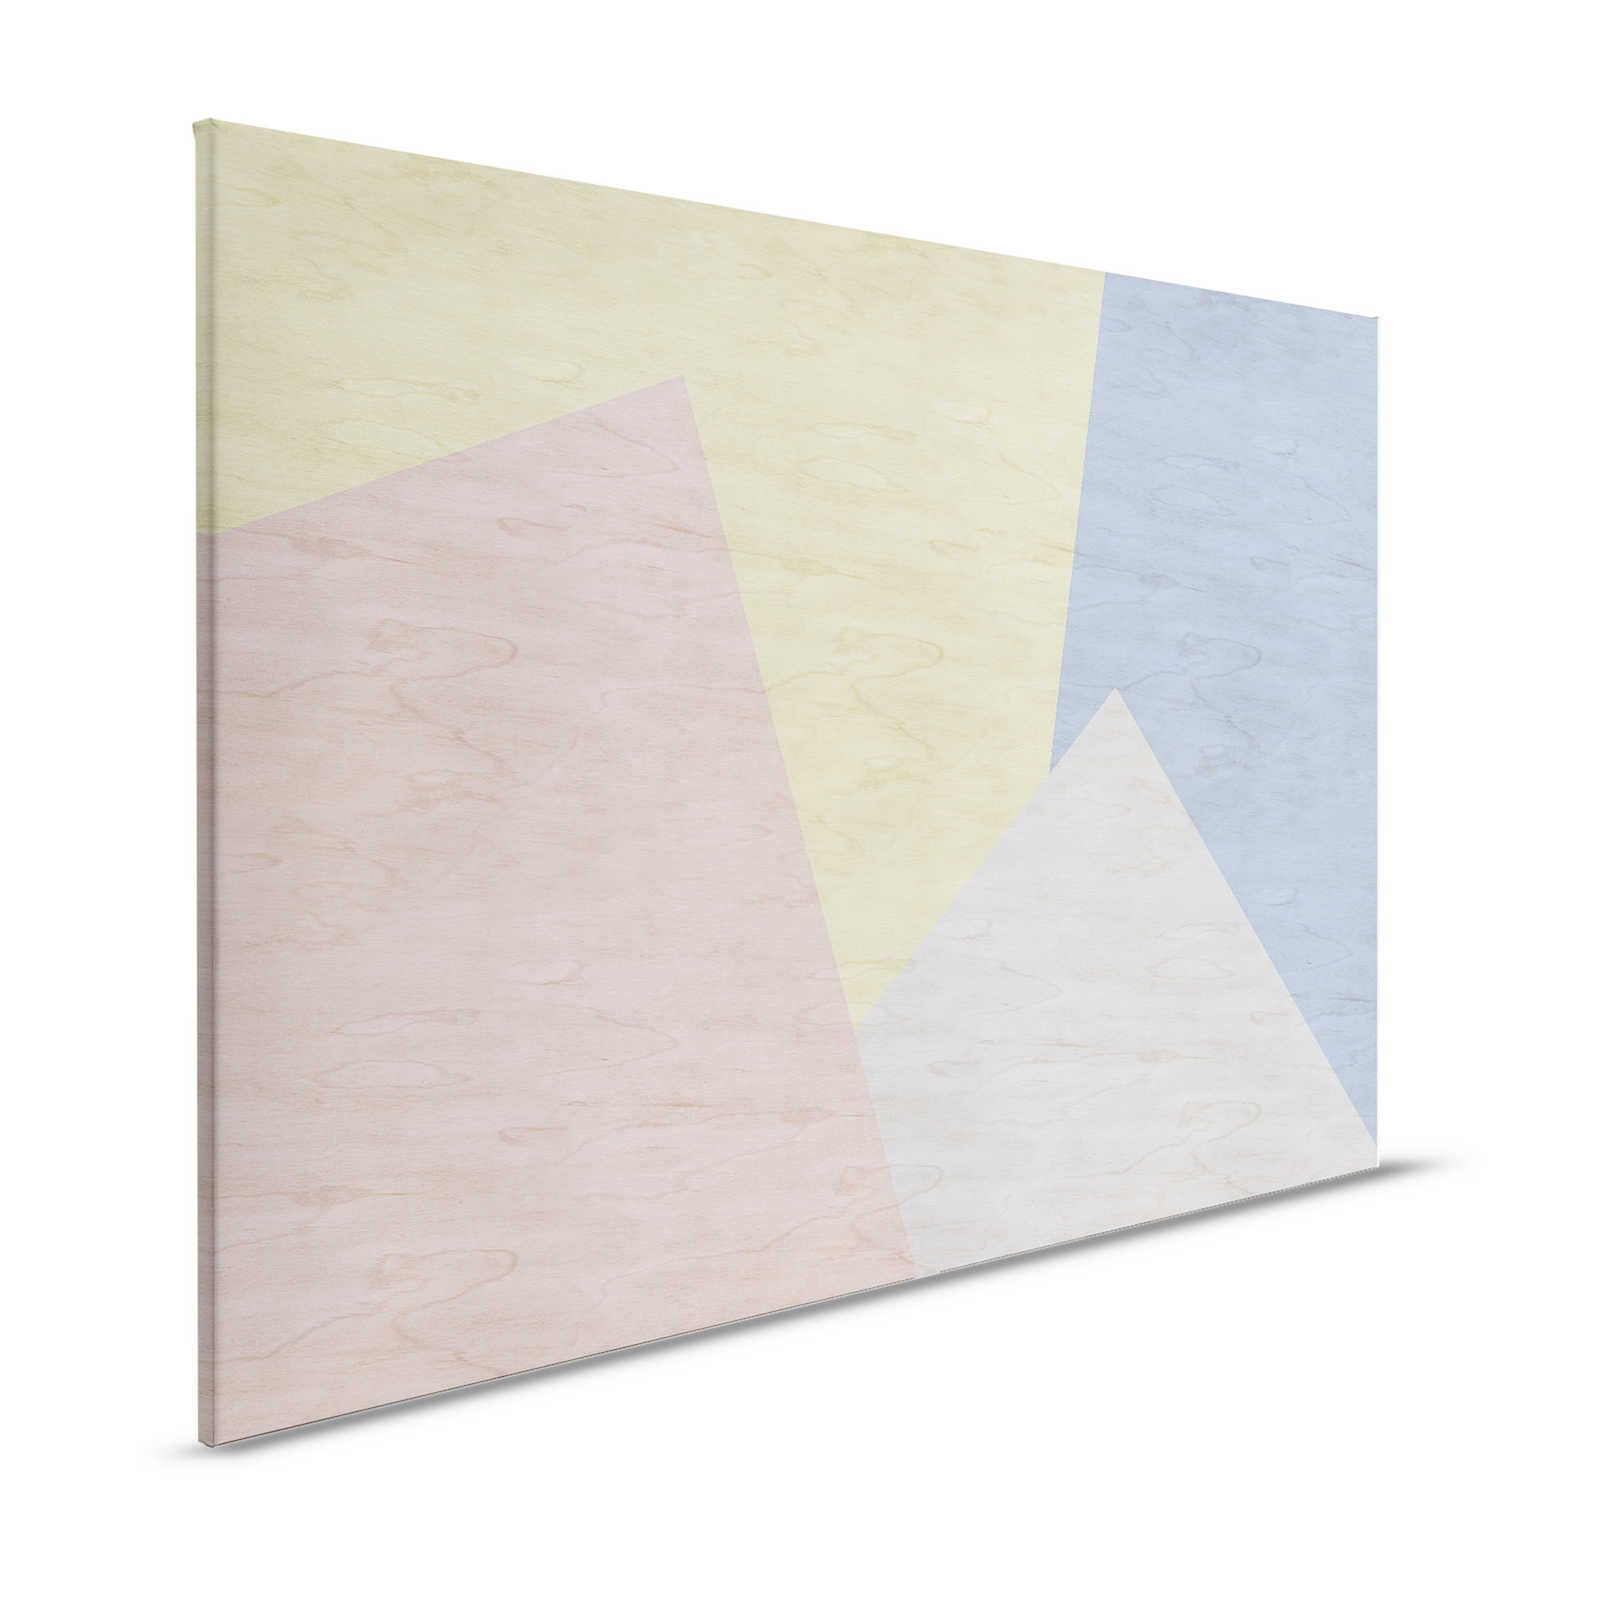 Inaly 3 - Pintura abstracta en lienzo de colores - Óptica contrachapada - 1,20 m x 0,80 m
